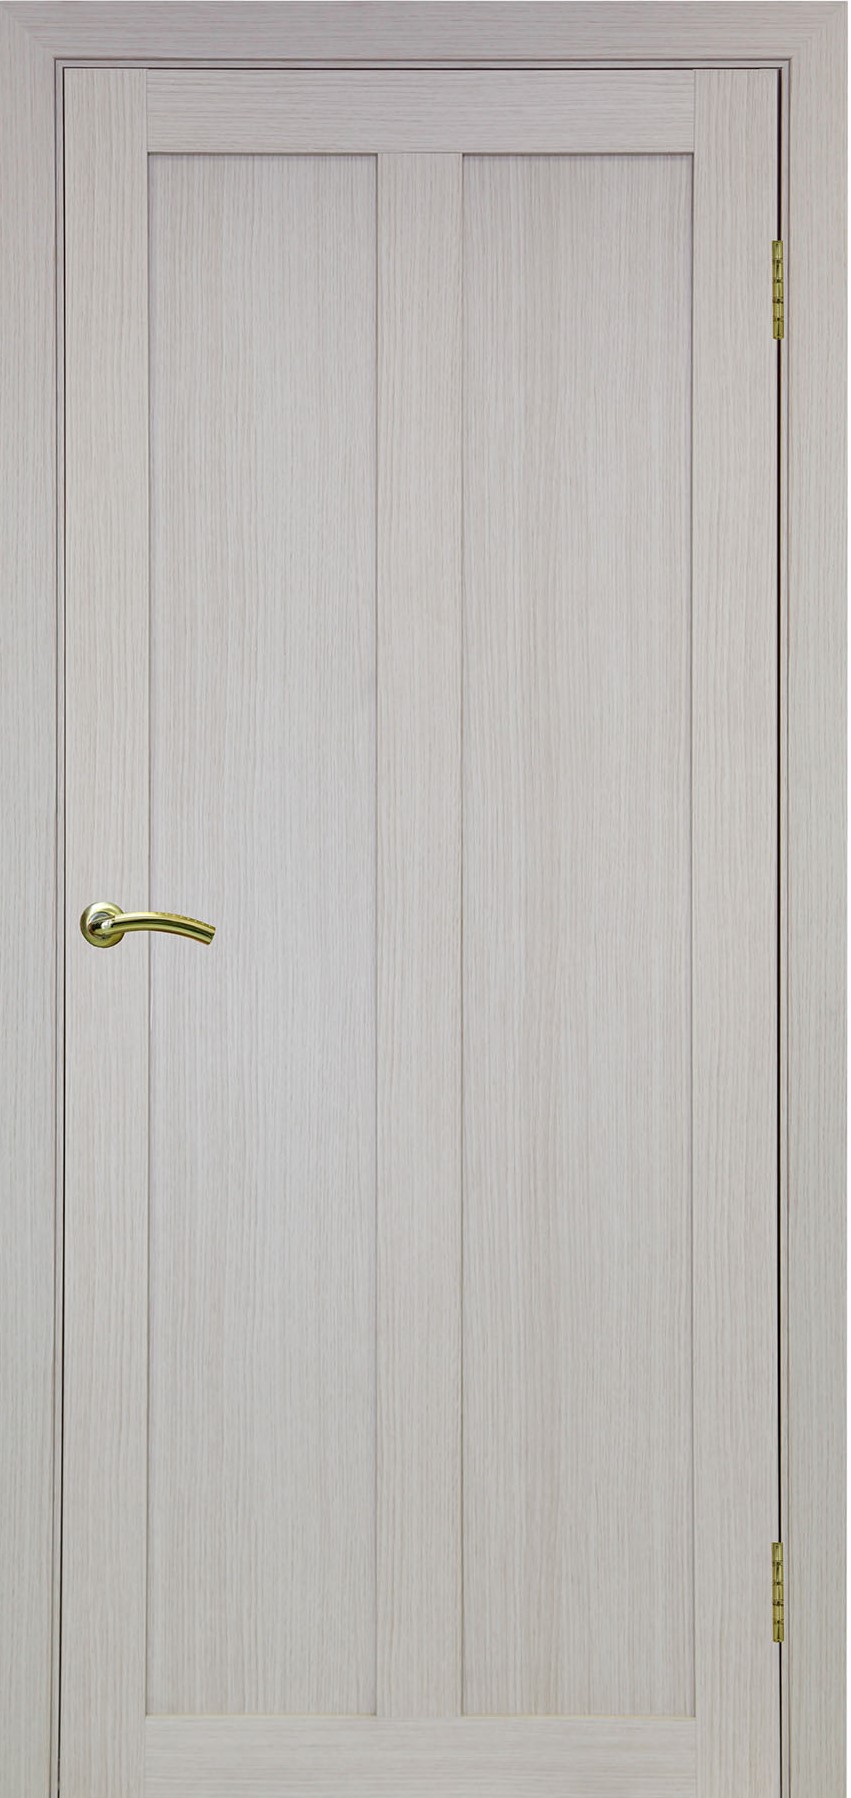 Межкомнатная дверь Турин-521 из экошпона